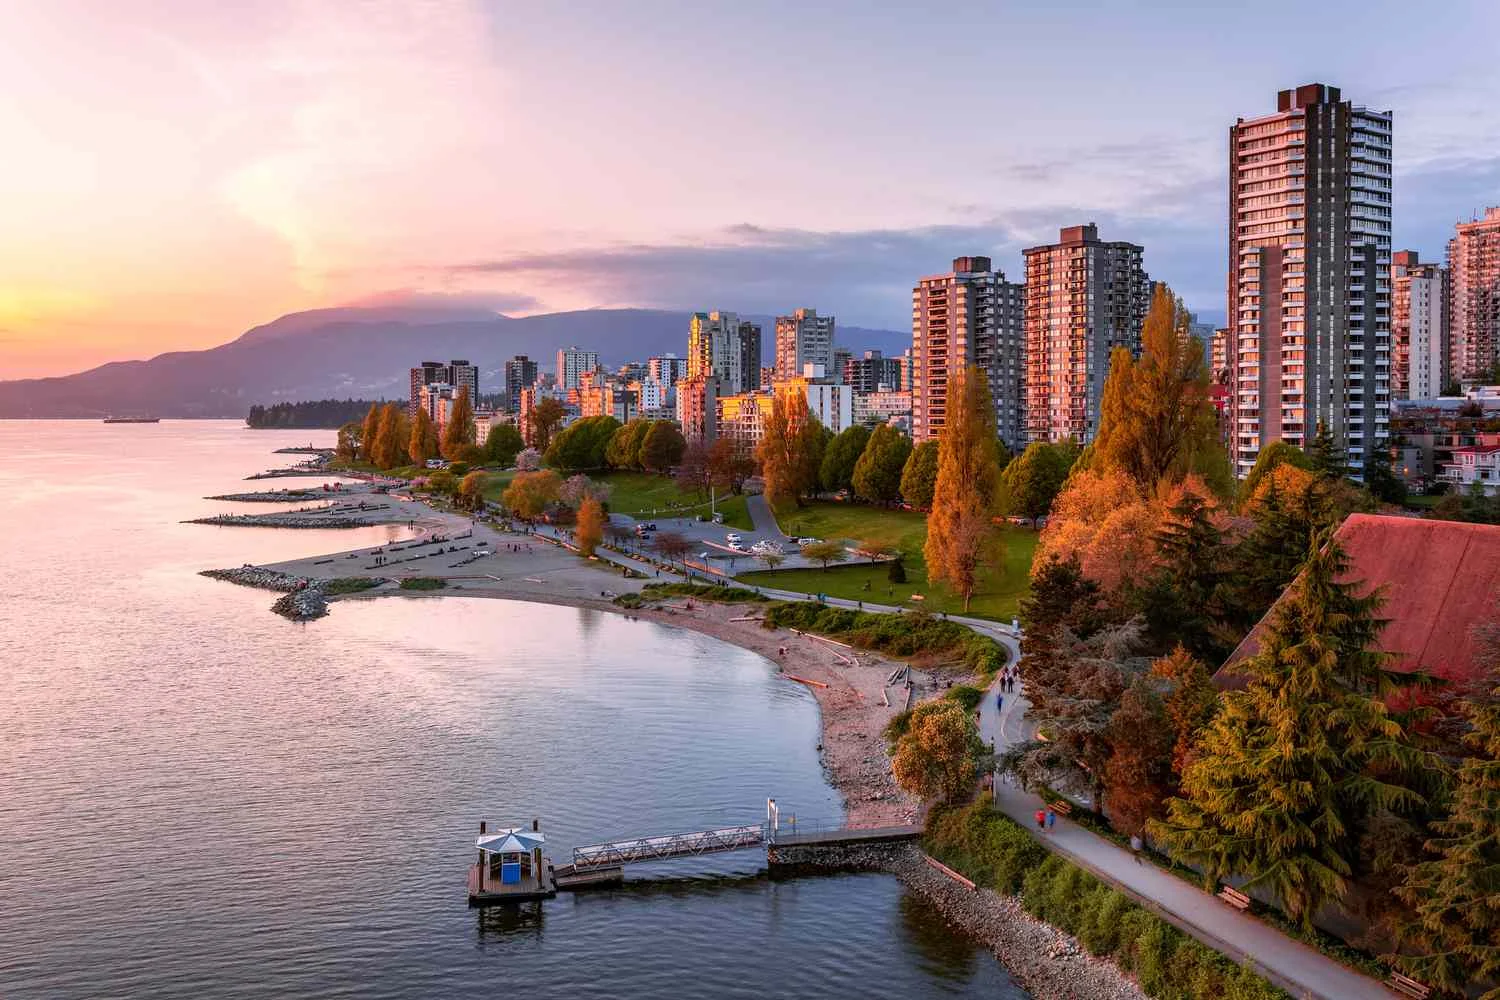 ونکوور از بهترین شهرهای کانادا